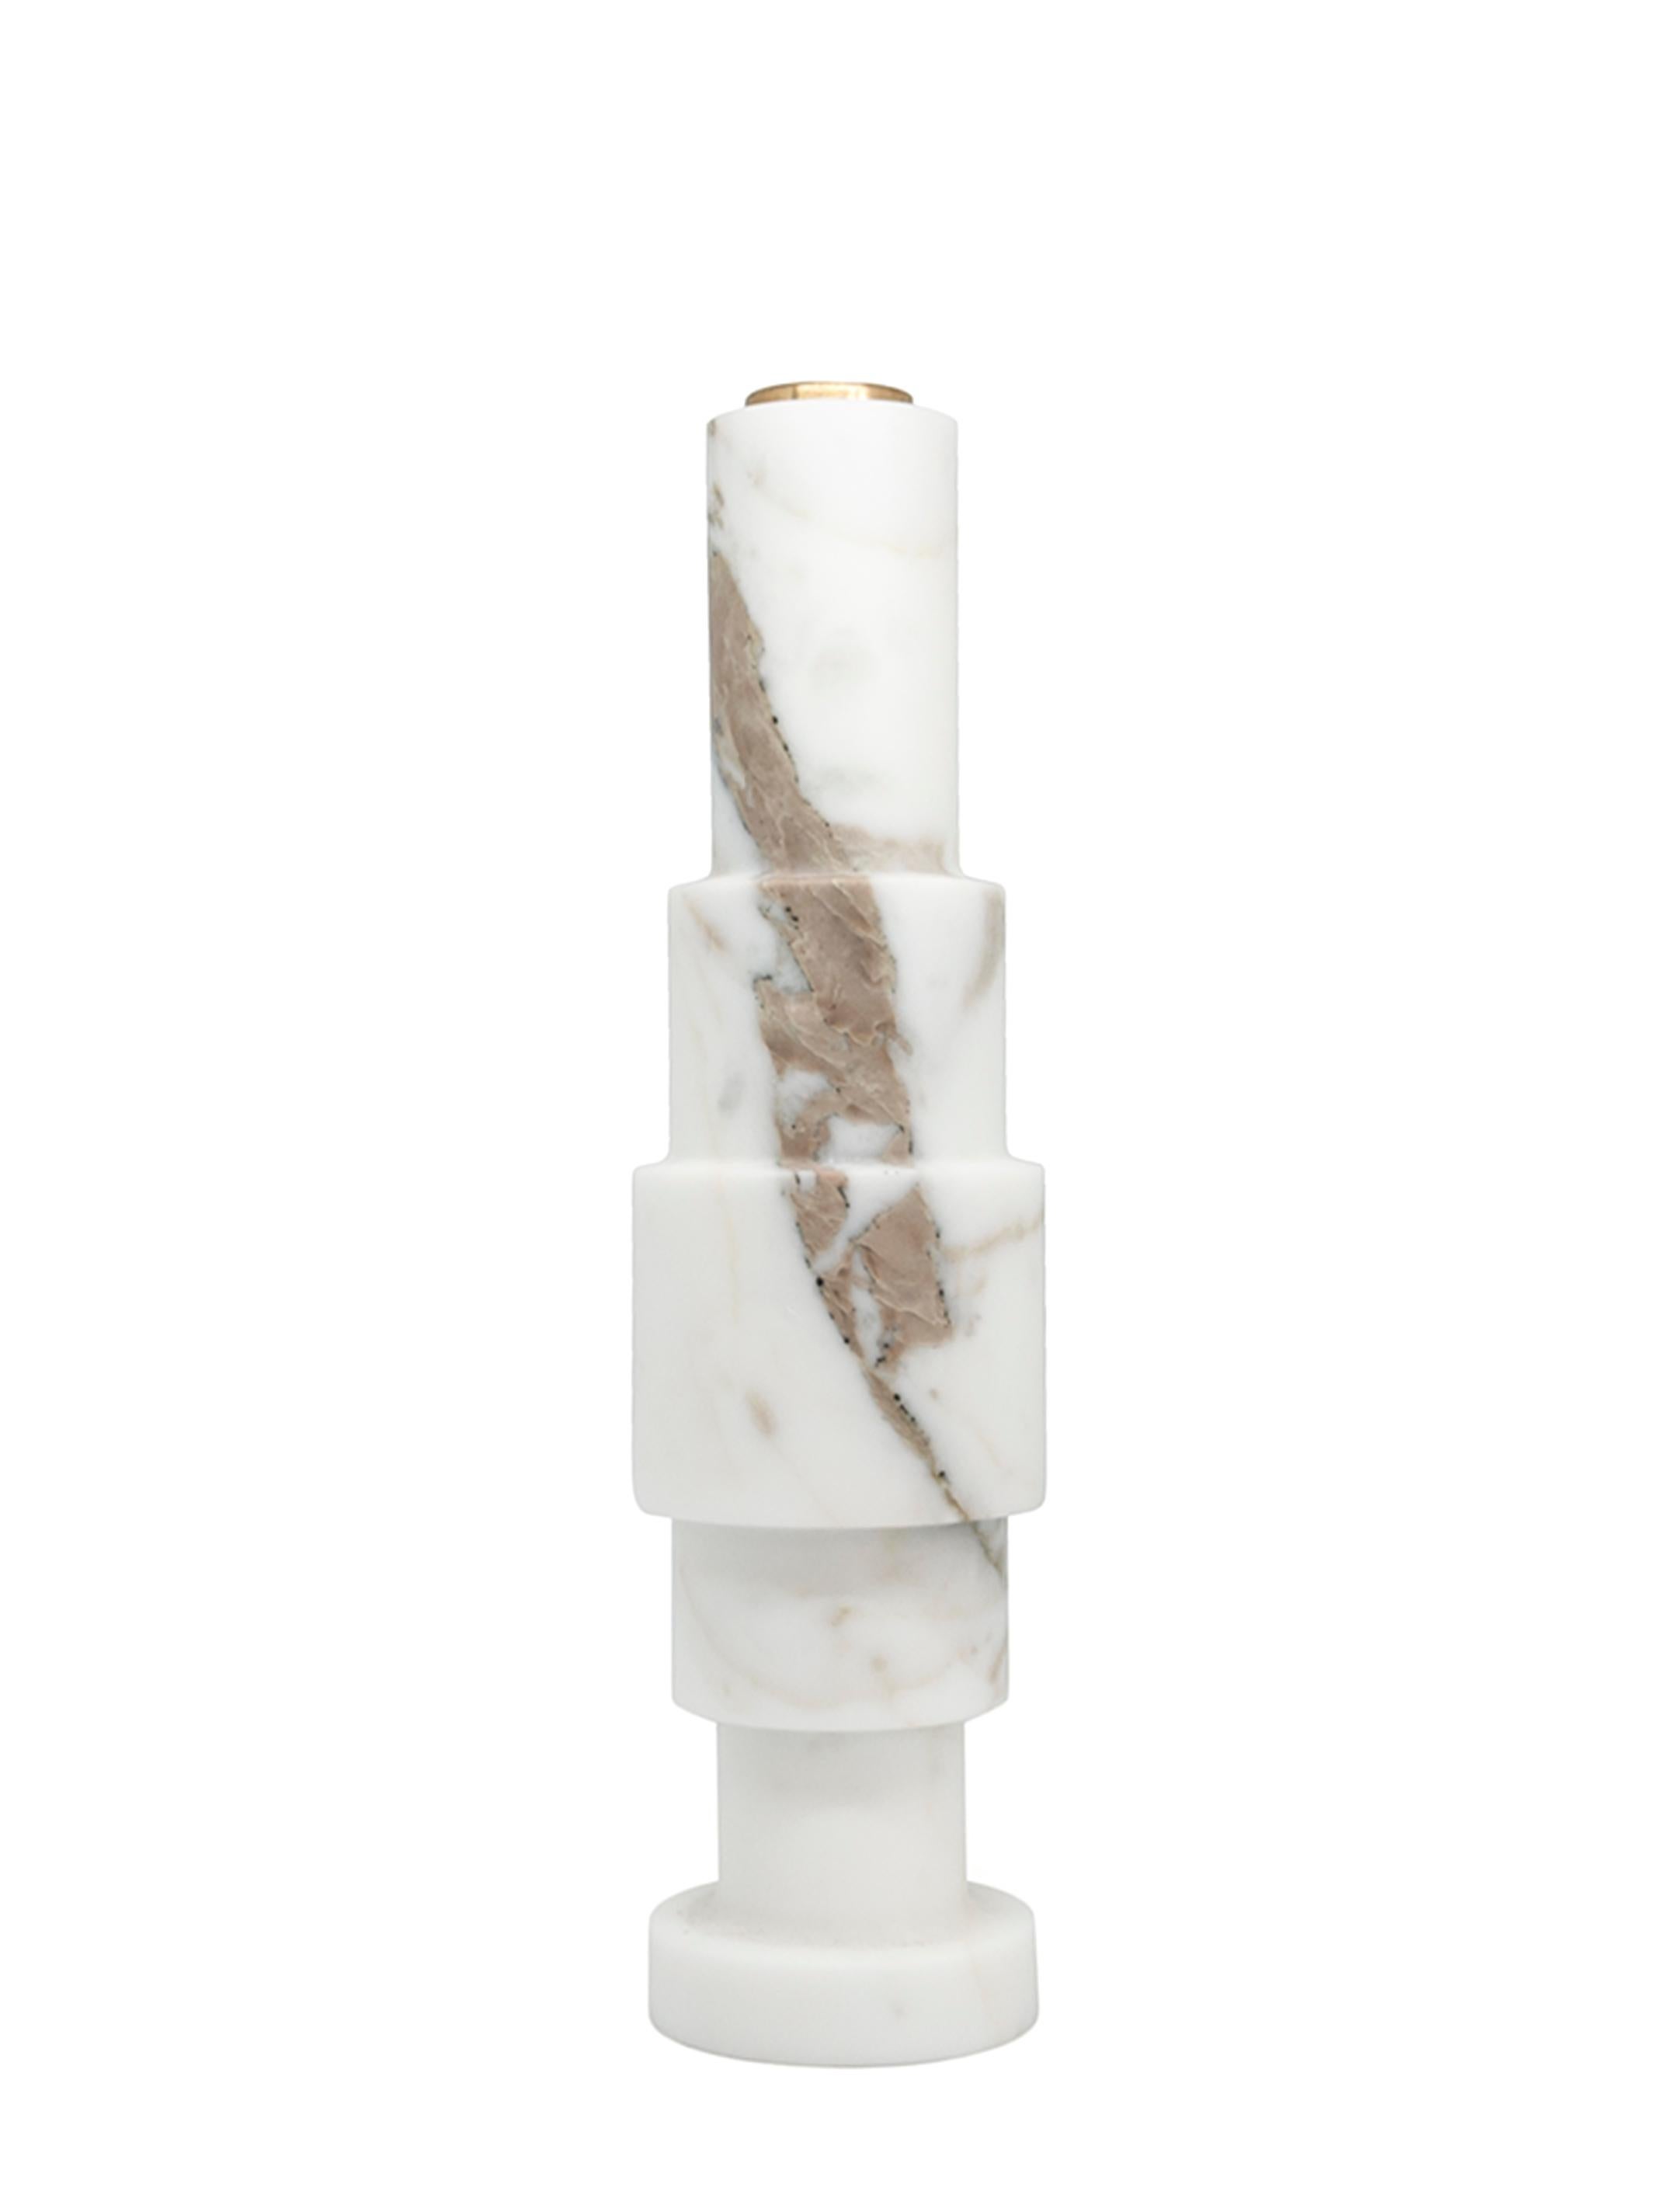 Hoher quadratischer einfarbiger Kerzenhalter aus weißem Carrara-Marmor und Messing.
- Jacopo Simonetti Entwurf für FiammettaV-
Jedes Stück ist ein Unikat (jeder Marmorblock hat eine andere Maserung und Schattierung) und wird von italienischen